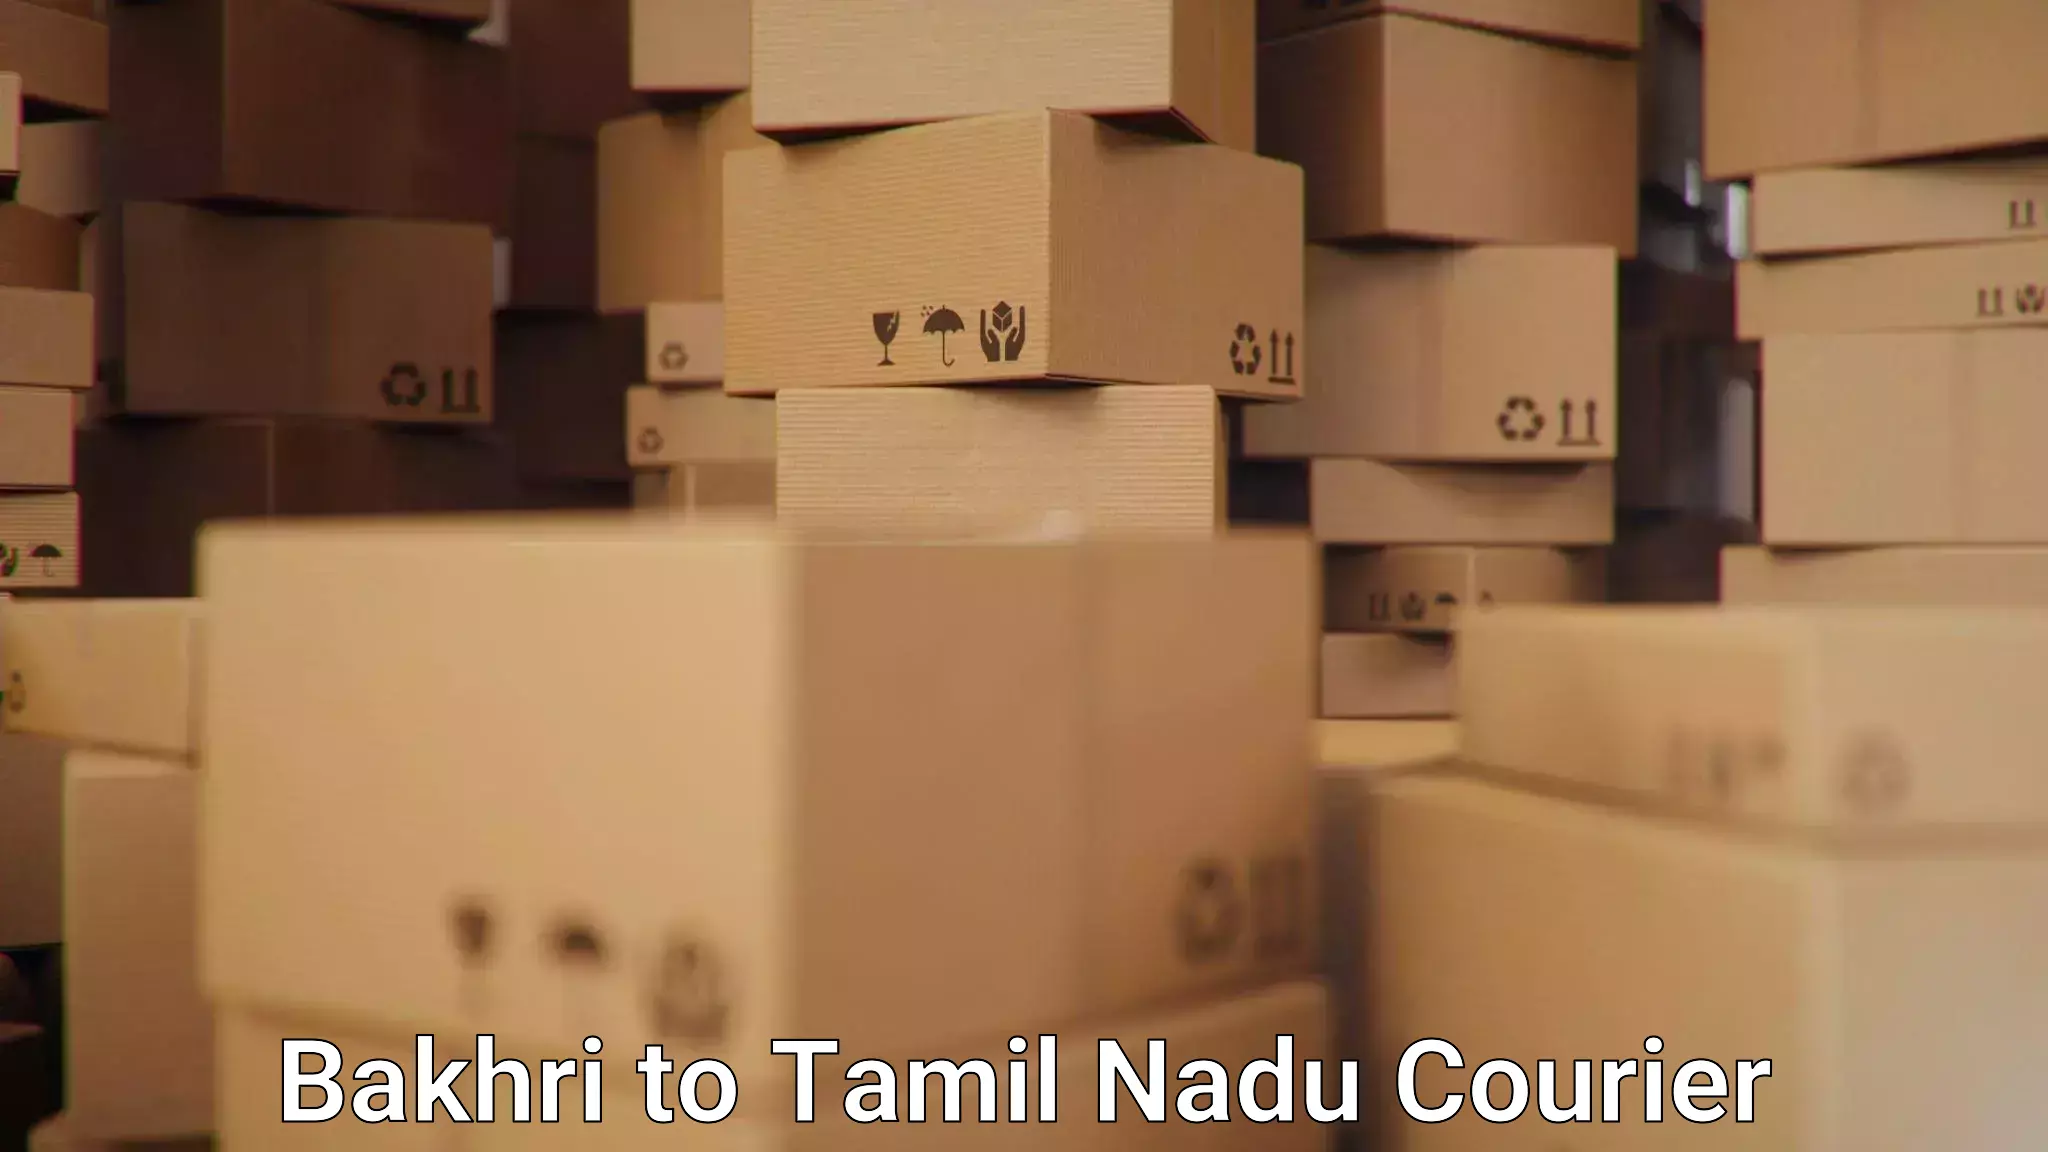 Ground shipping Bakhri to Tamil Nadu